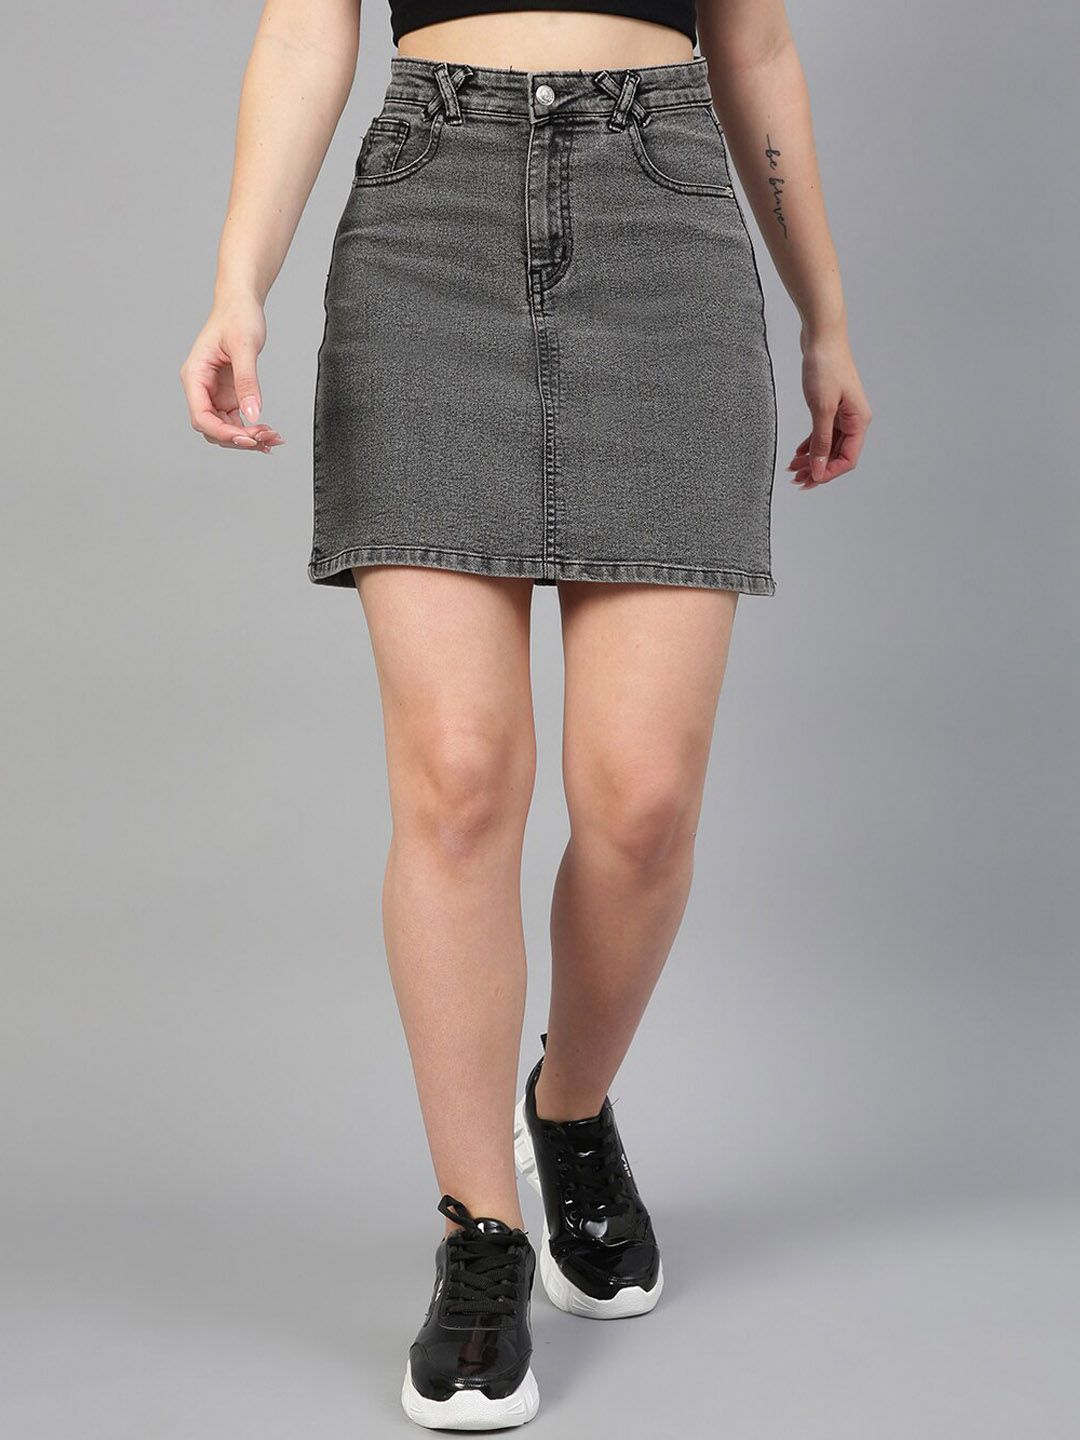 Kotty Denim A-Line Mini Skirt Price in India